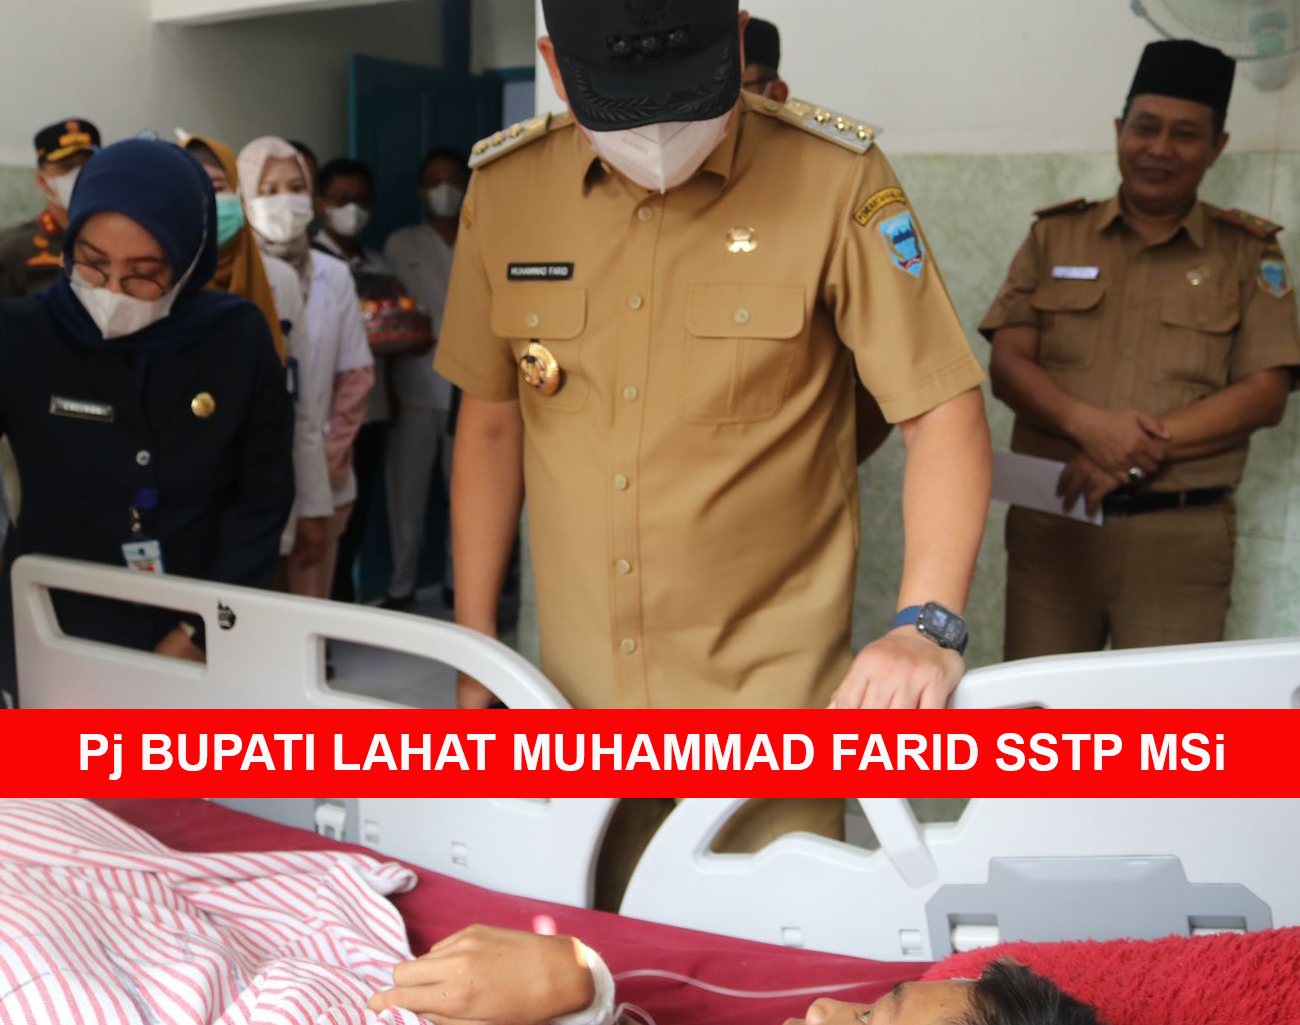 Pj Bupati Lahat Muhammad Farid Beri Bantuan Kesehatan dan Pendidikan bagi Ridho Anto